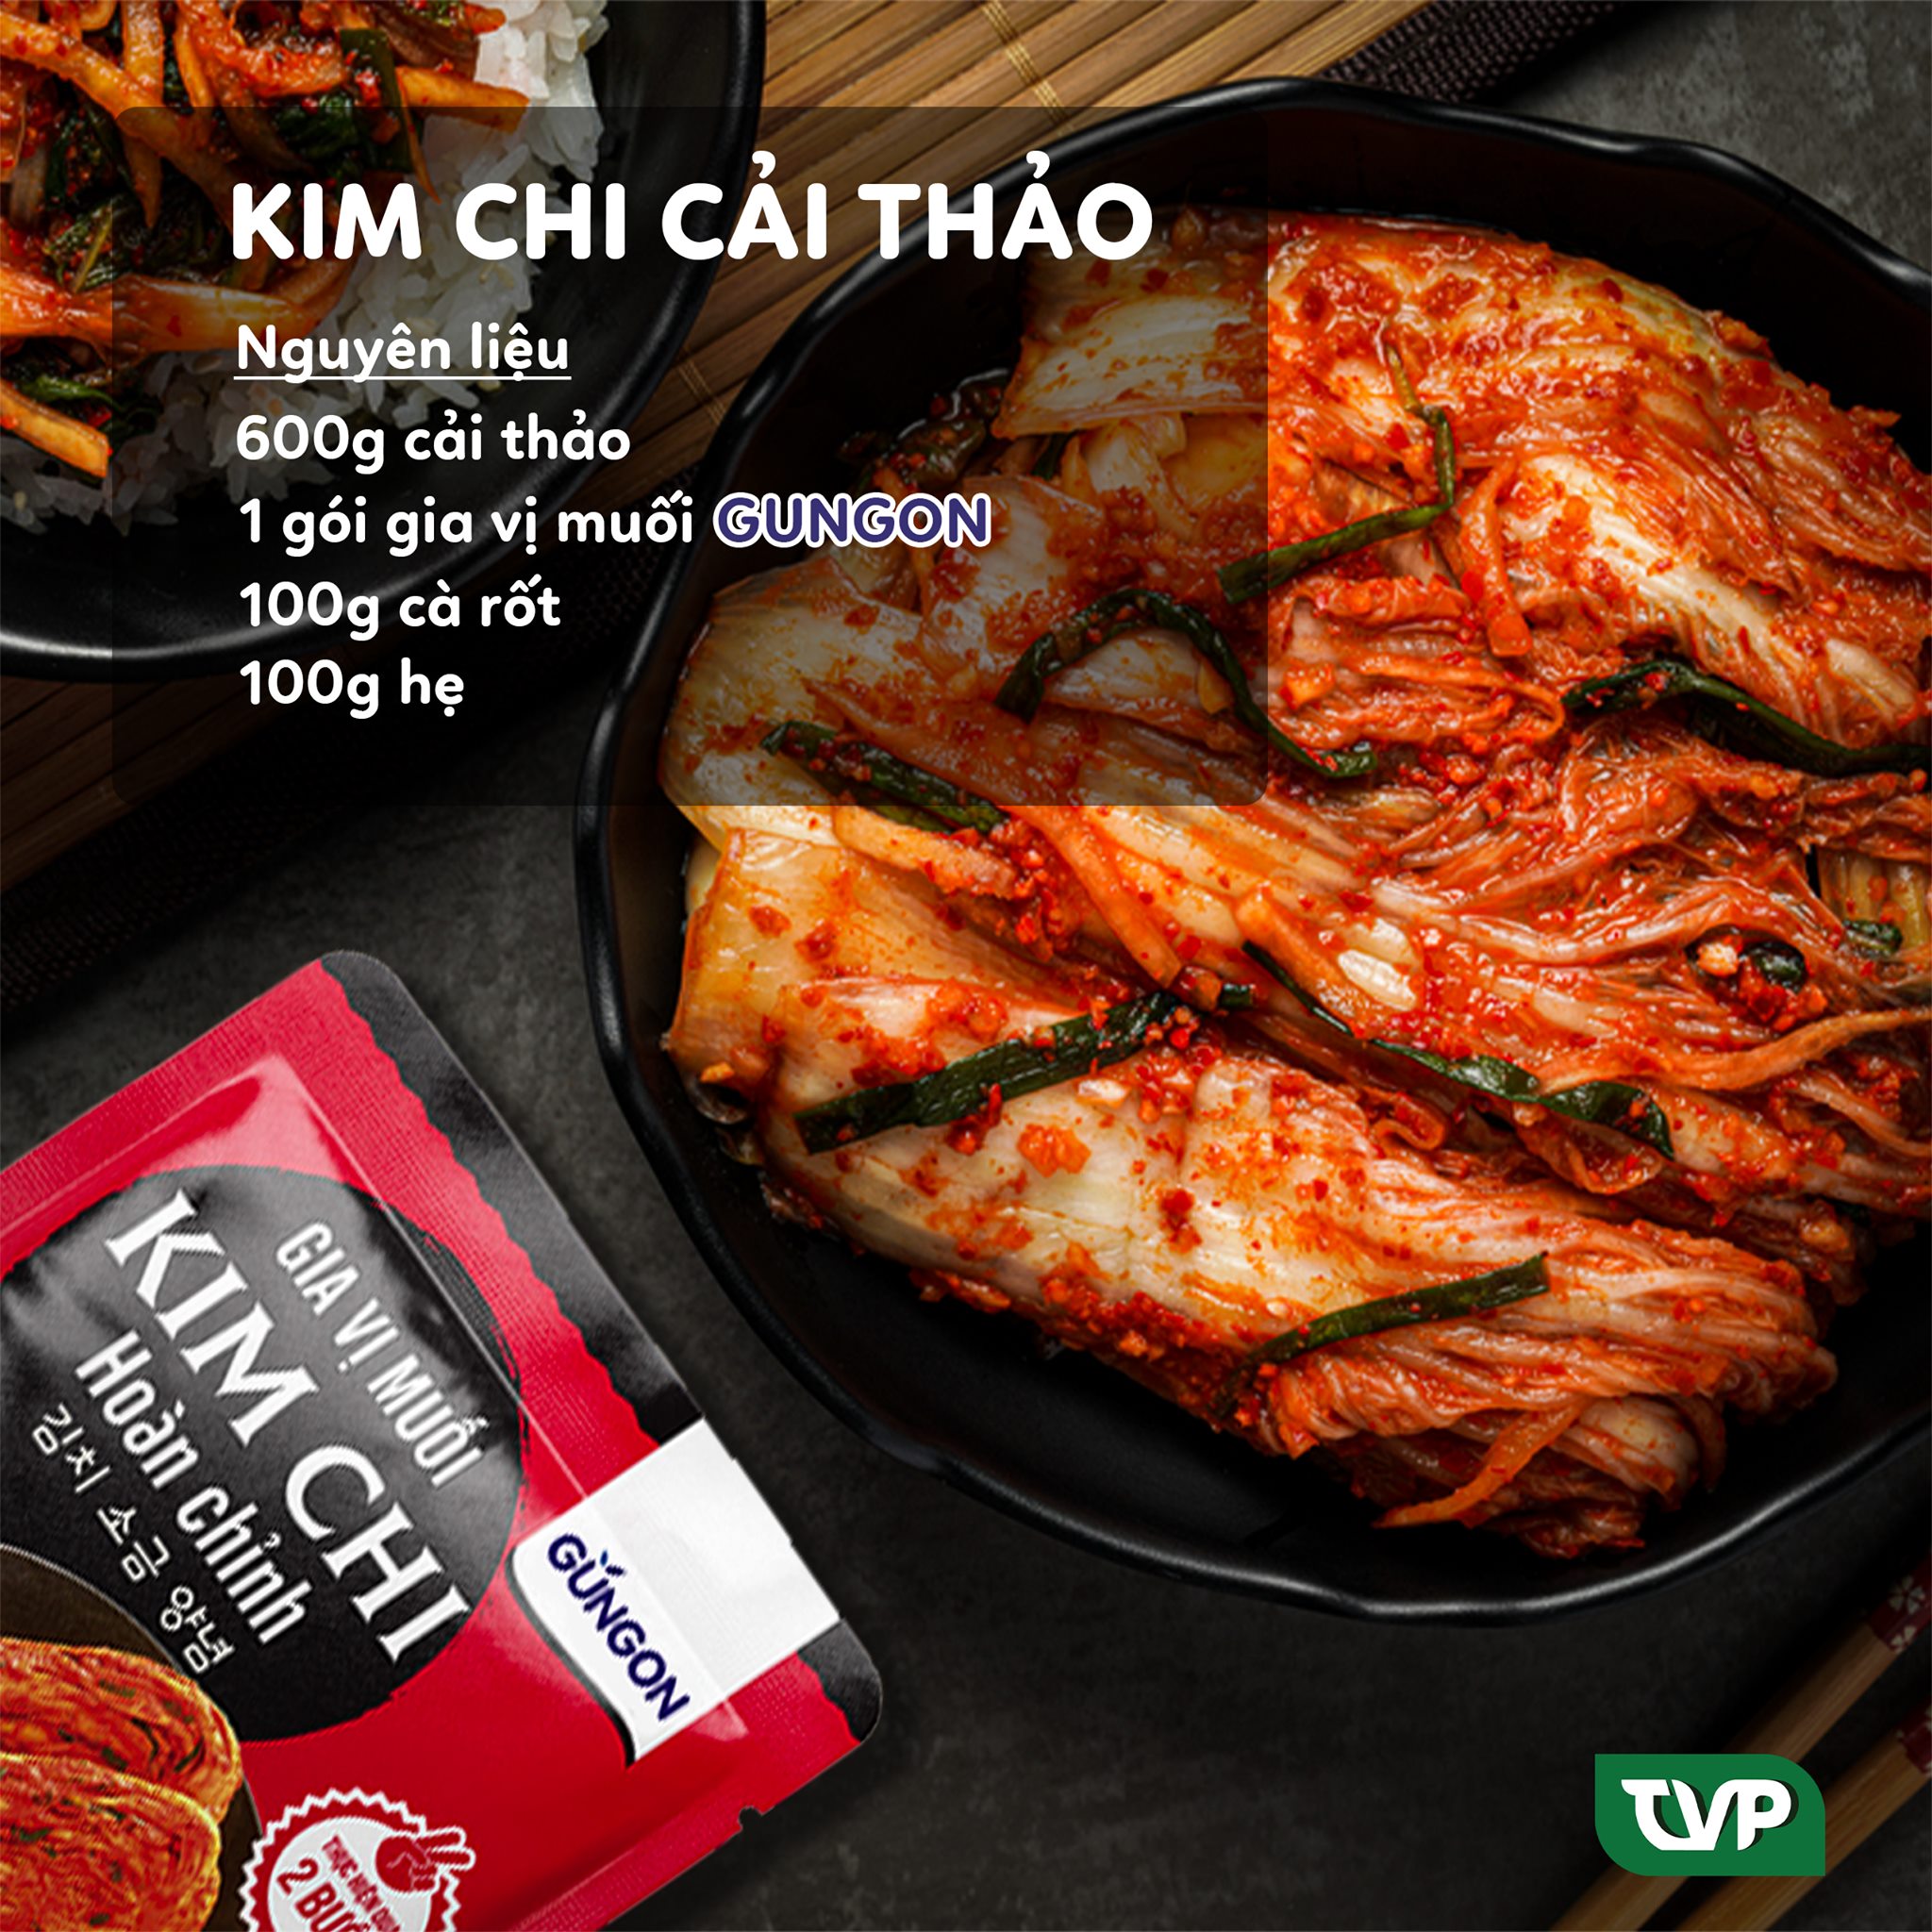 Combo 3 gói gia vị muối kim chi hoàn chỉnh Gungon chuẩn vị Hàn Quốc làm được 3kg kimchi